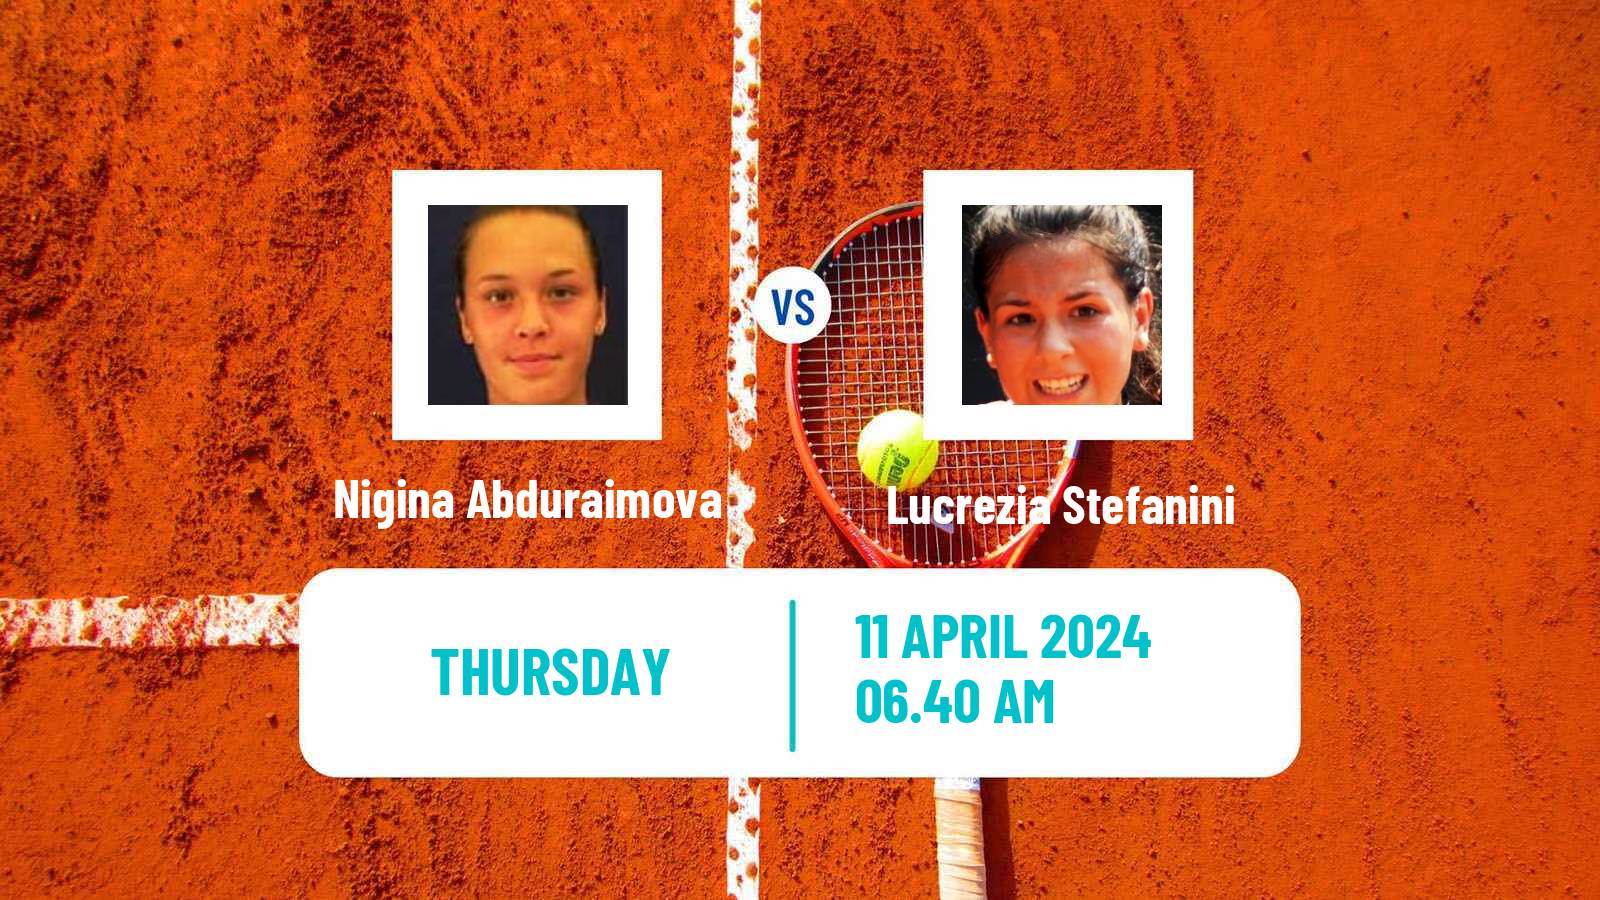 Tennis ITF W75 Bellinzona Women Nigina Abduraimova - Lucrezia Stefanini